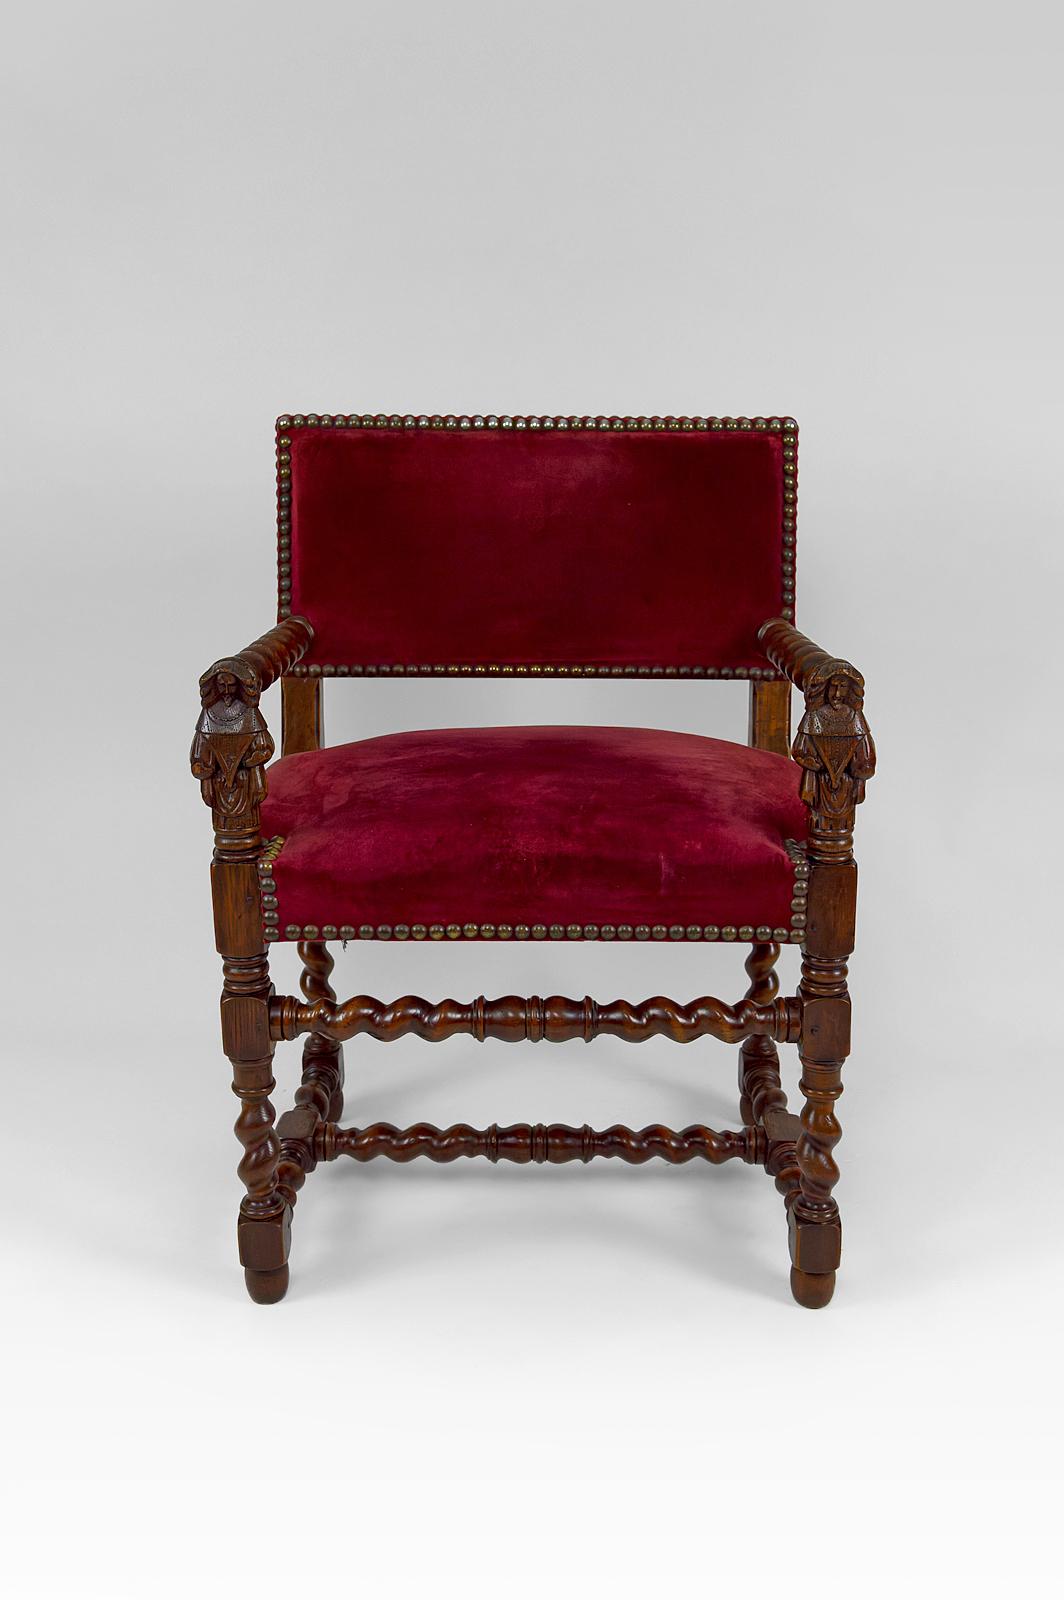 Schöner Sessel im Stil Louis XIII / Haute Epoque mit skulptierten Frauen auf den Armlehnen.
Ende des 19. Jahrhunderts.

Sicherlich inspiriert von einem Sesselpaar um 1640, das im Louvre in der Abteilung für Kunstgegenstände des Mittelalters, der